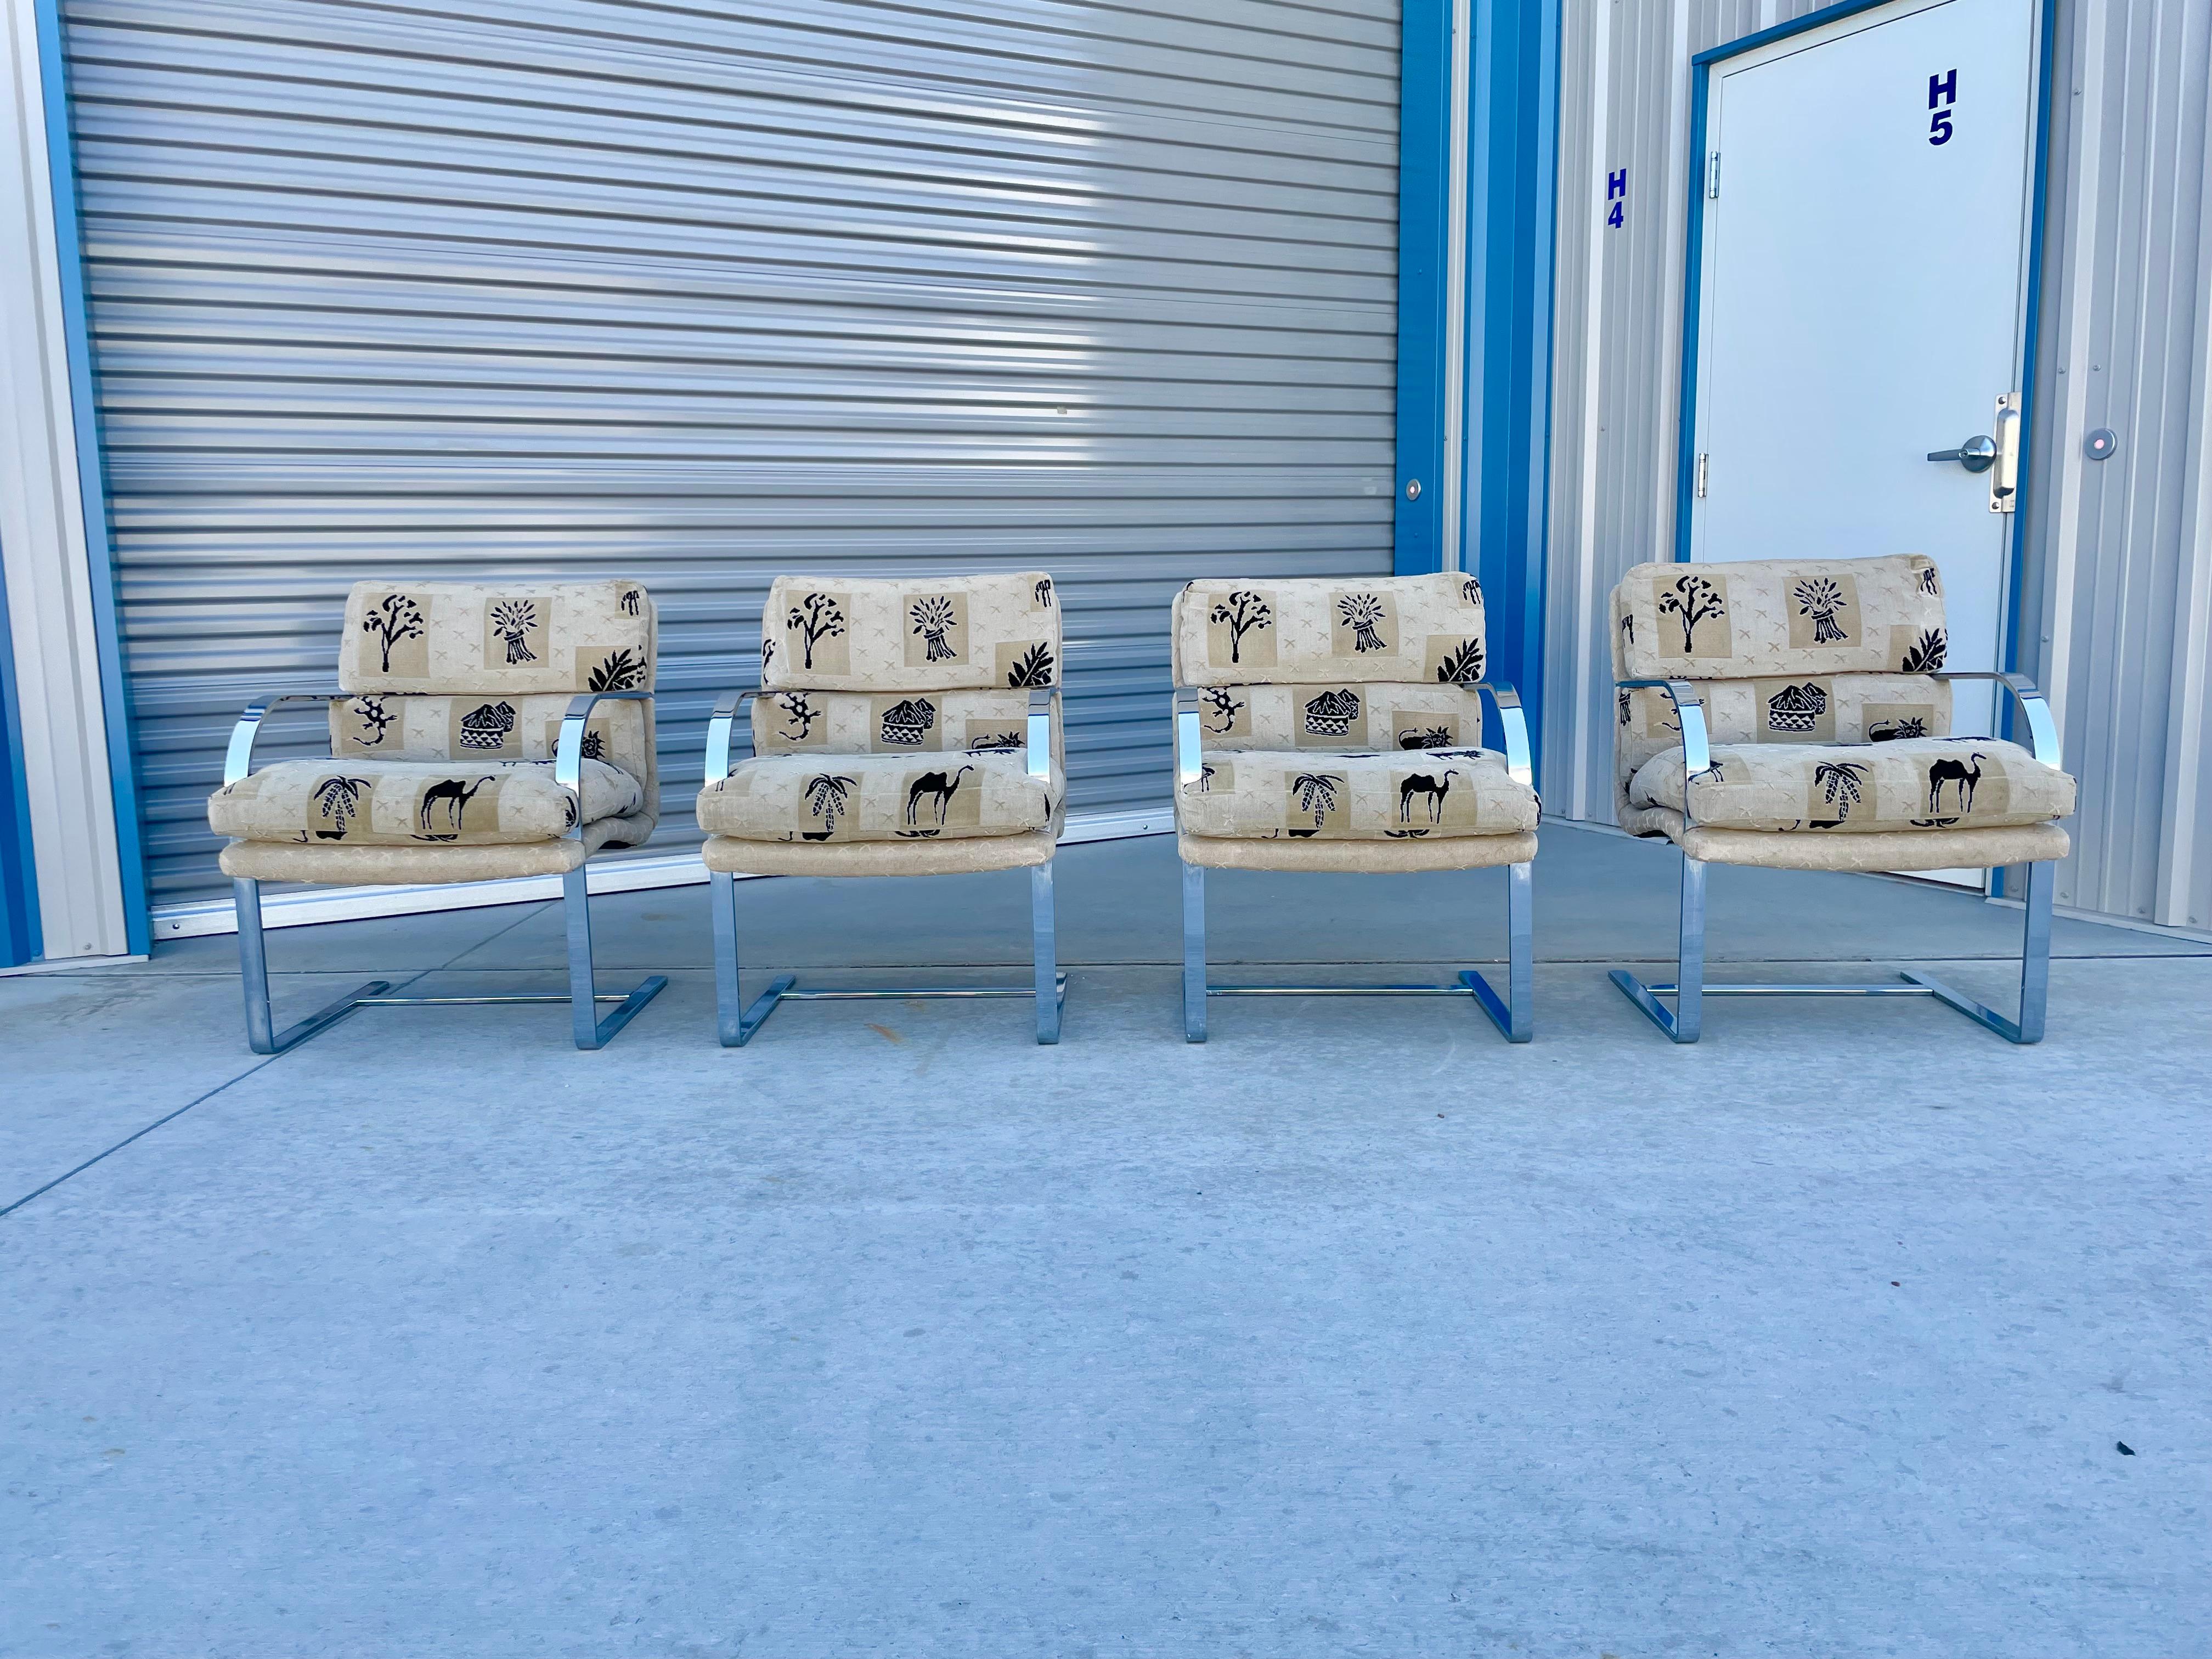 Vintage Set mit vier verchromten Esszimmerstühlen, entworfen von Ludwig Mies van der Rohe, hergestellt von Knoll, ca. 1970er Jahre. . Diese Stühle zeichnen sich durch ihr schwebendes Design aus, da das verchromte Gestell den Eindruck erweckt, dass